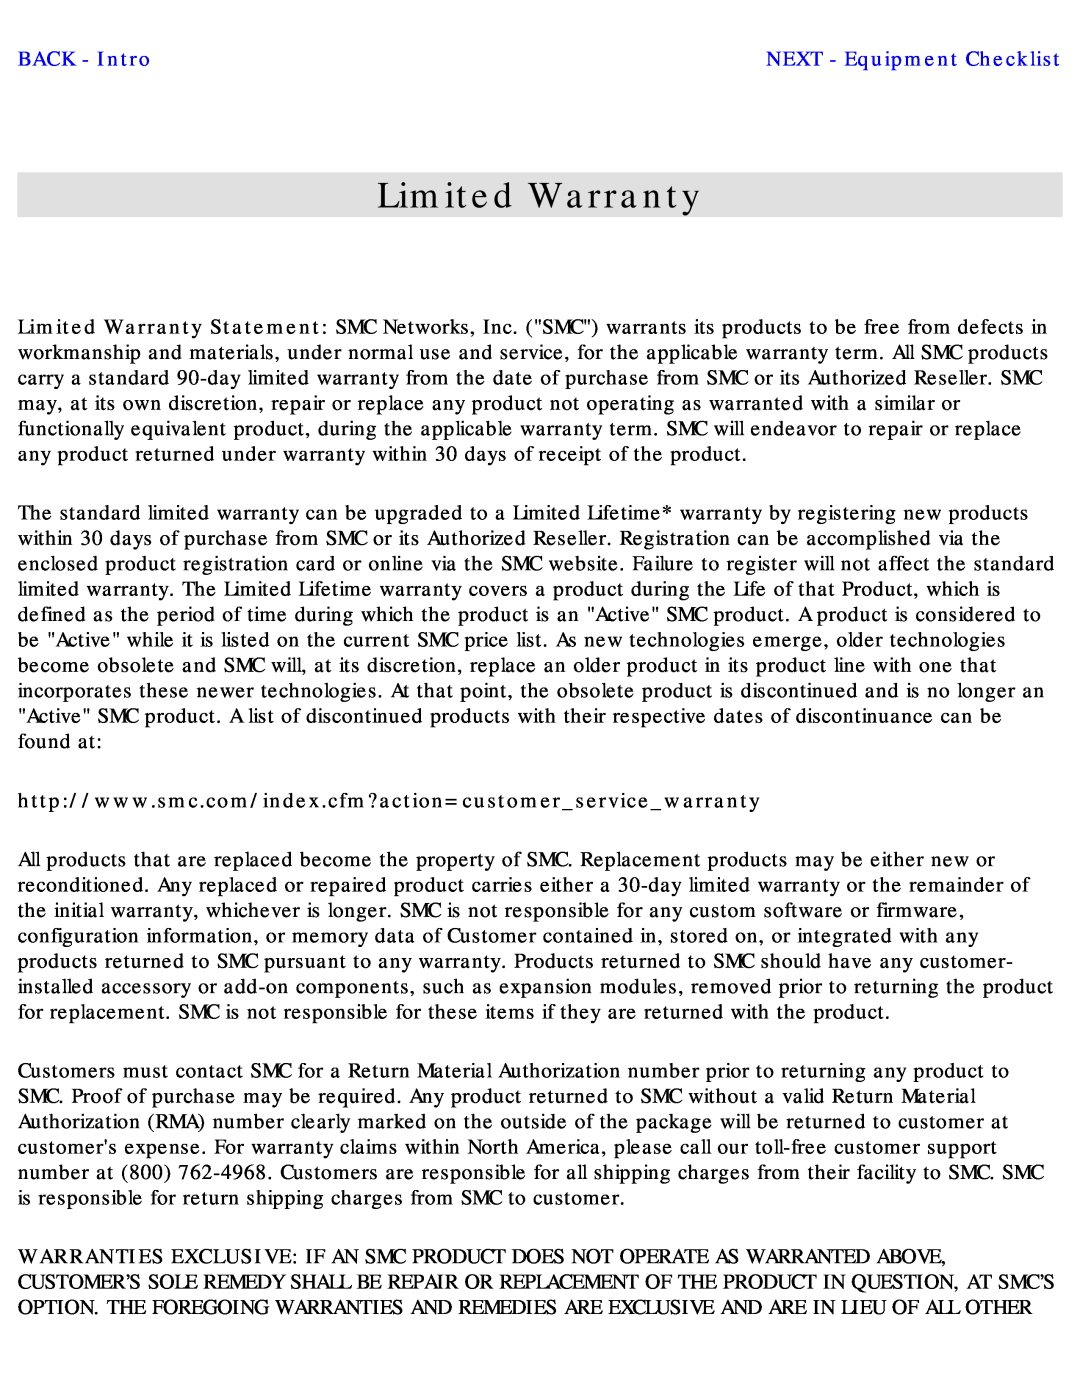 SMC Networks SMC2655W warranty Limited Warranty, BACK - Intro 